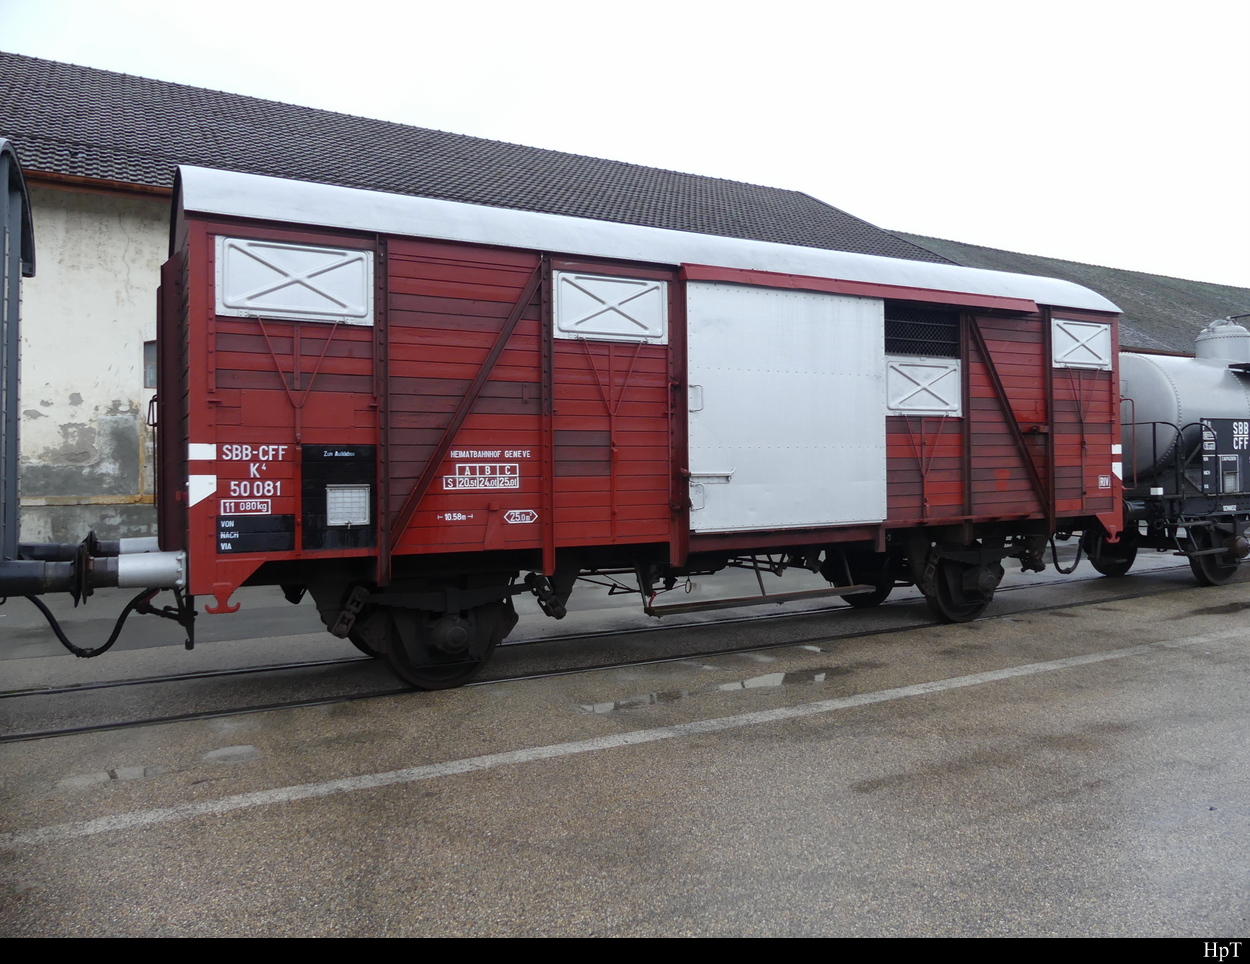 SBB - Historischer Güterwagen K  50081 ( X 40 85 95 25 035-3 ) ausgestellt im Areal der SBB Werksätte in Yverdon anlässlich der Feier 175 Jahre Bahnen am 02.10.2022